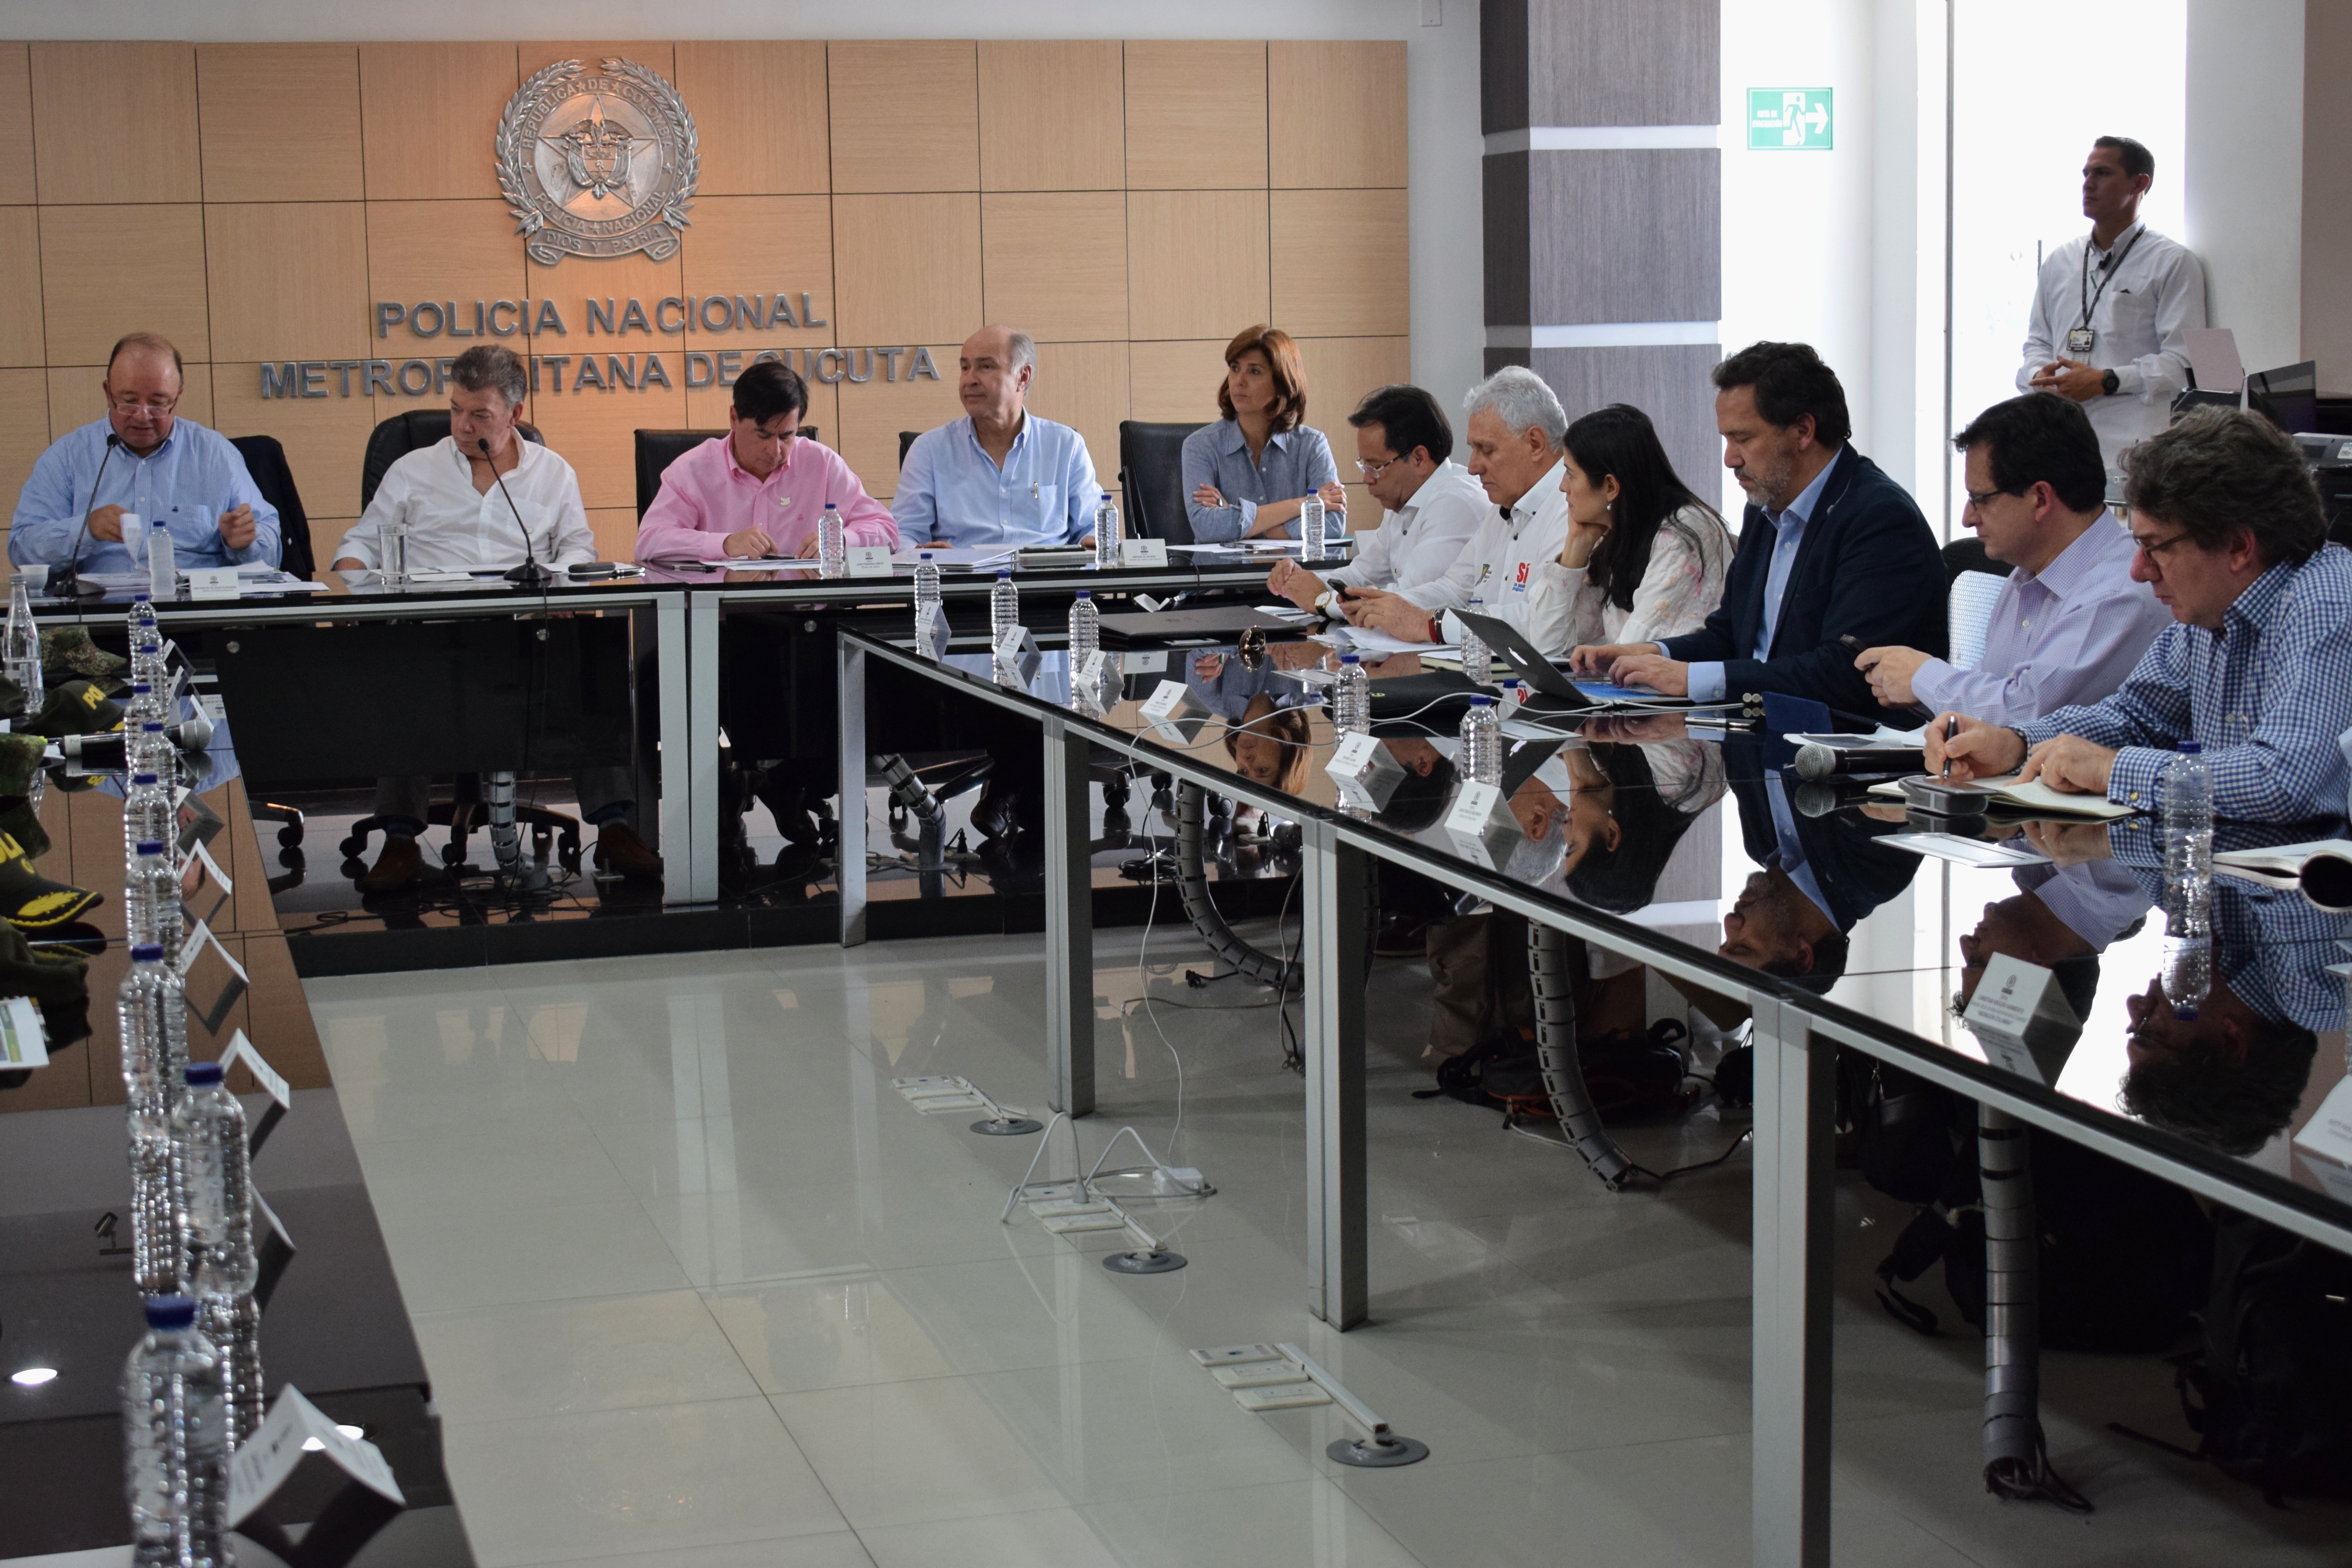 Canciller Holguín participó en la reunión que lideró el Presidente Santos con la Mesa de Seguridad Ciudadana de Cúcuta